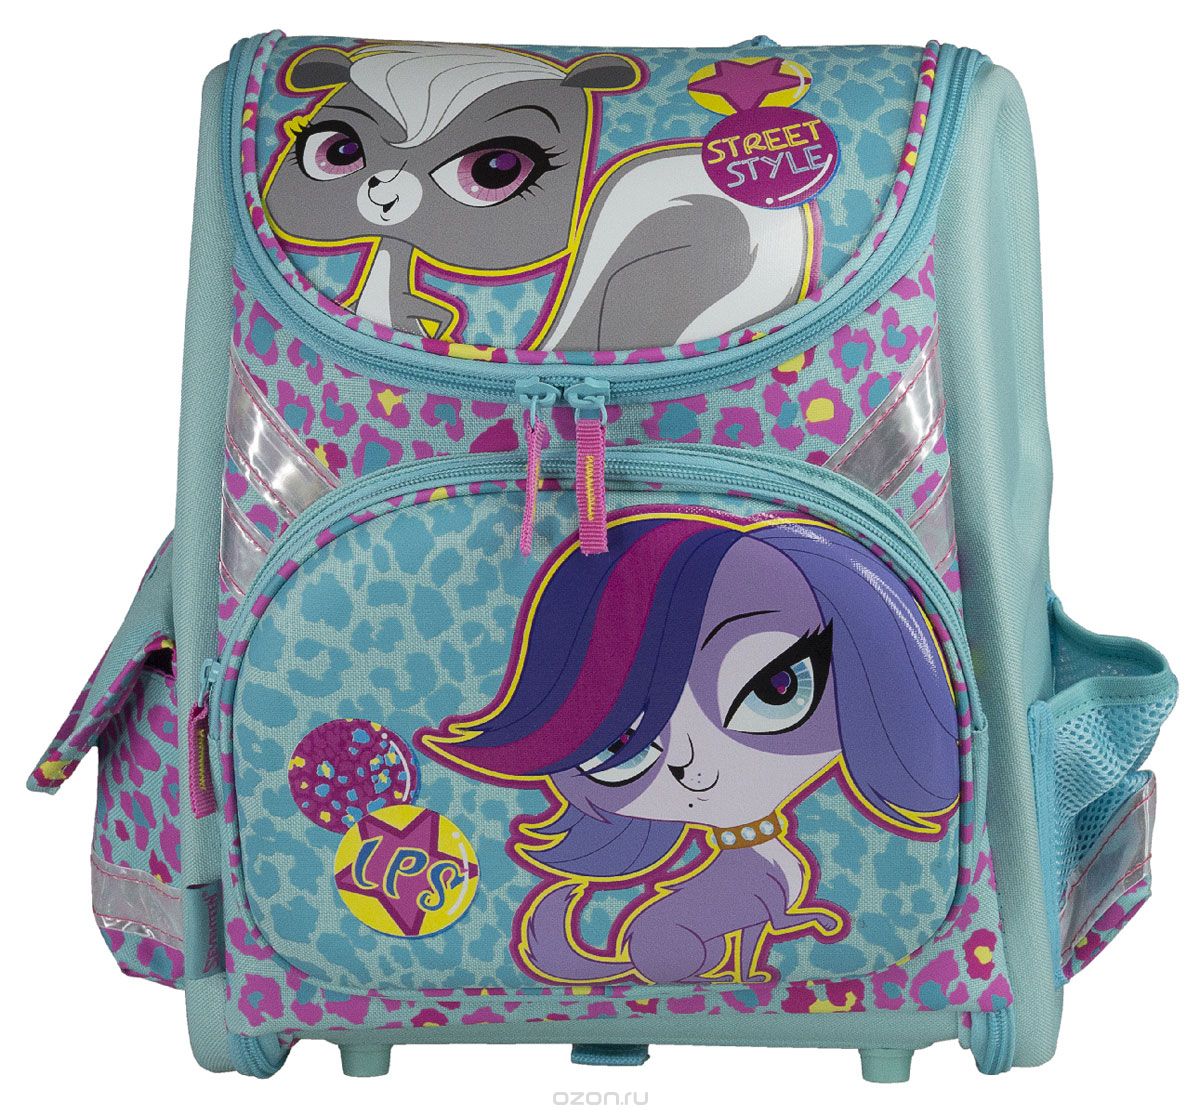 Ранец школьный Littlest Pet Shop Kinderline , цвет: бирюзовый рюкзак детский на молнии 3 наружных кармана бирюзовый